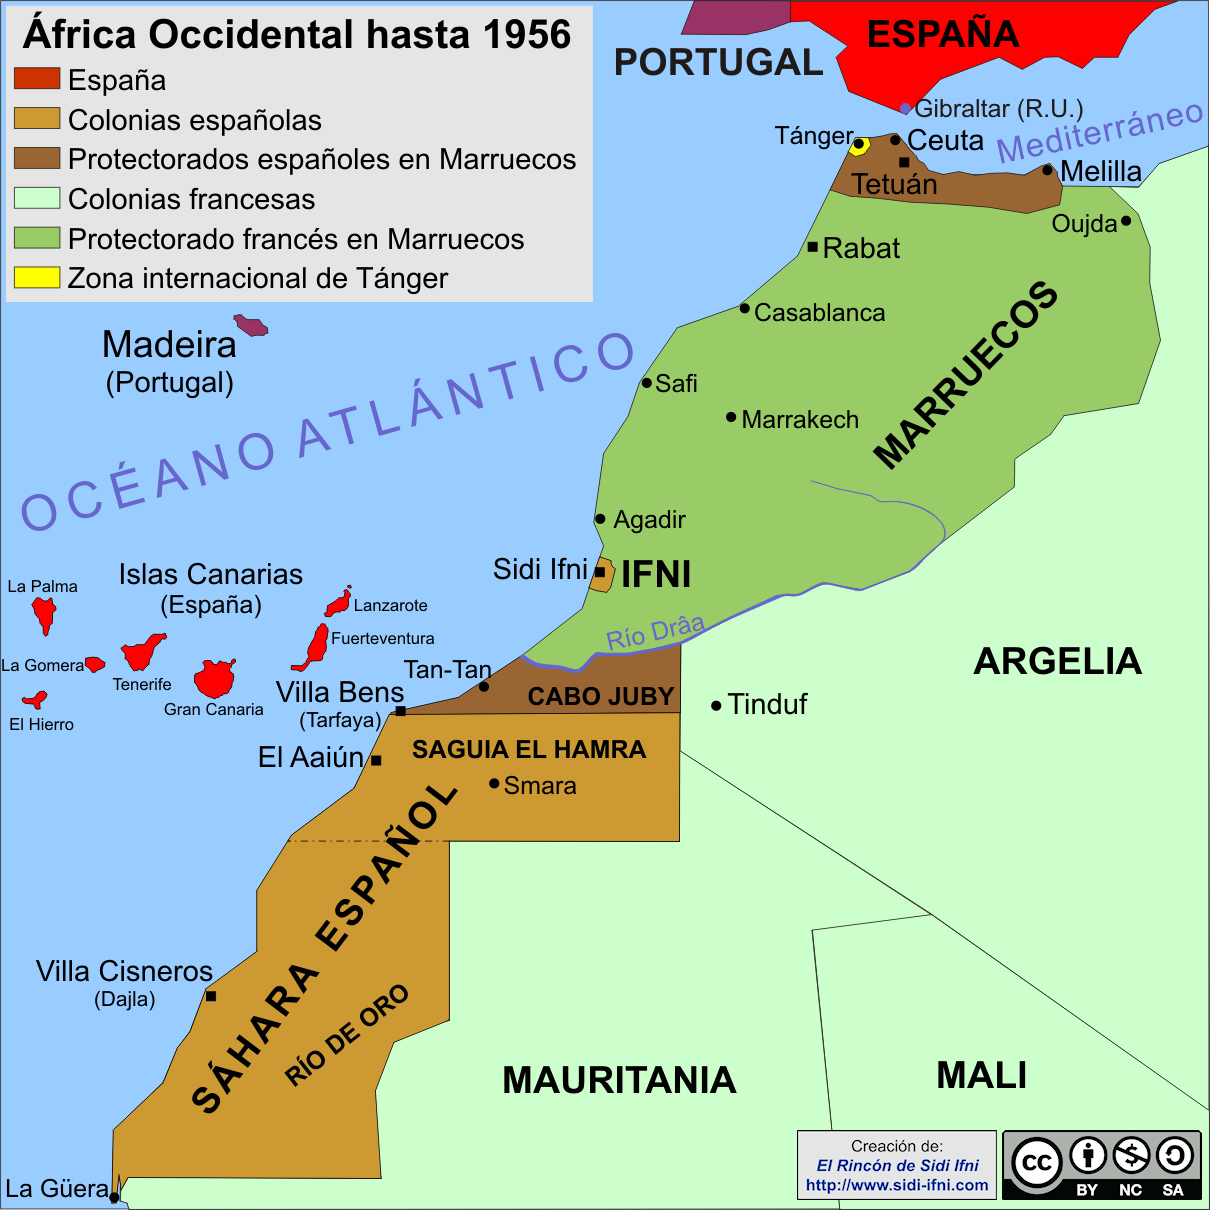 Mapa de África Occicdental hasta 1956.